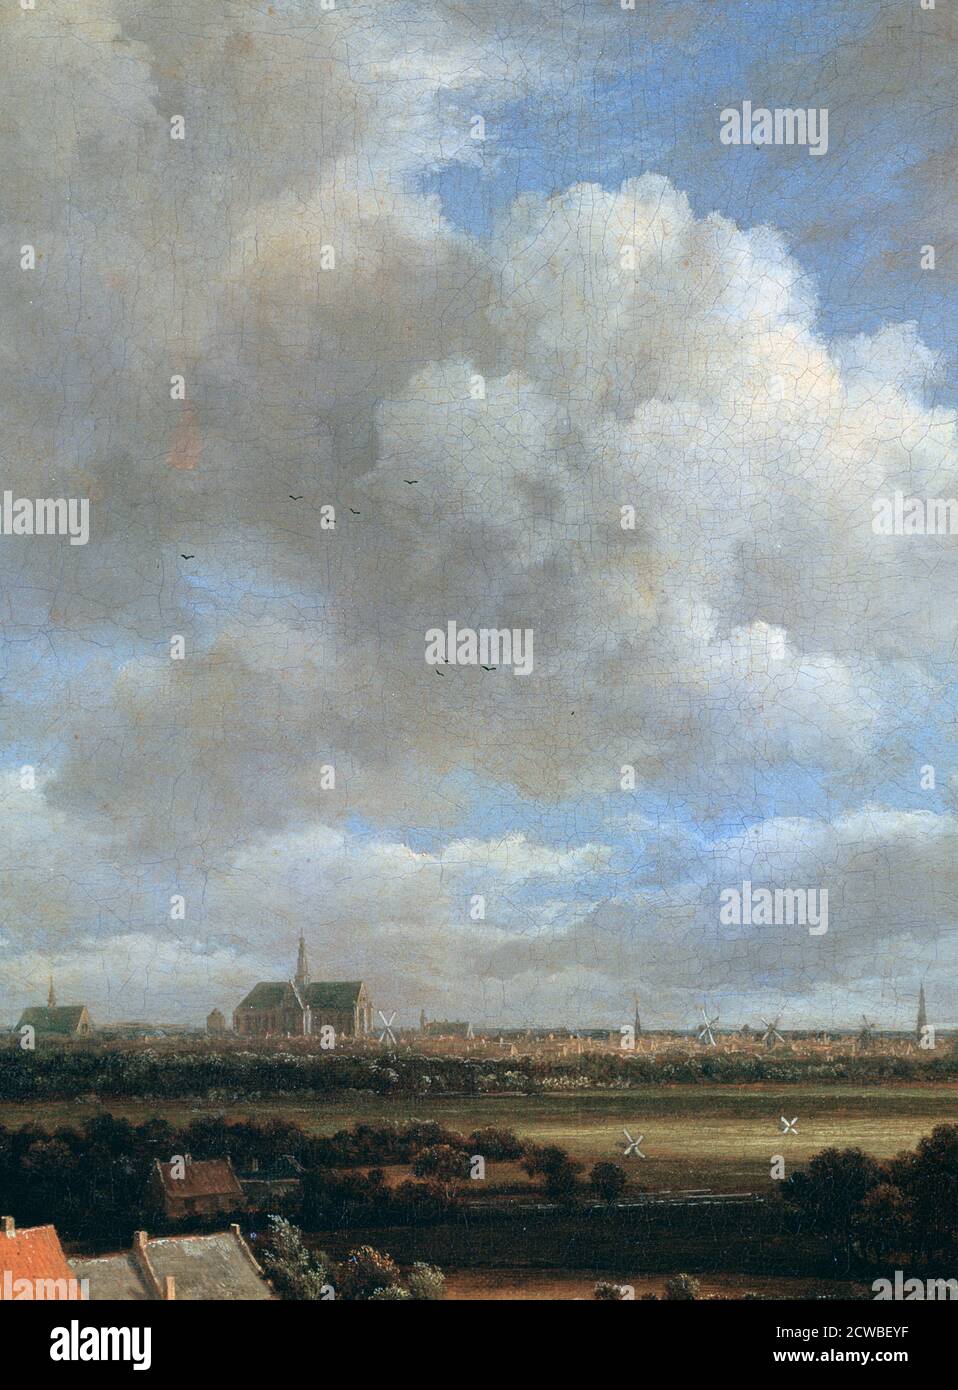 Ansicht von Haarlem', (Detail), c1670. Künstler: Jacob van Ruisdael. Jacob van Ruisdael galt als herausragender Landschaftsmaler des Goldenen Zeitalters der Niederlande, einer Zeit großen Reichtums und kultureller Errungenschaften. Stockfoto